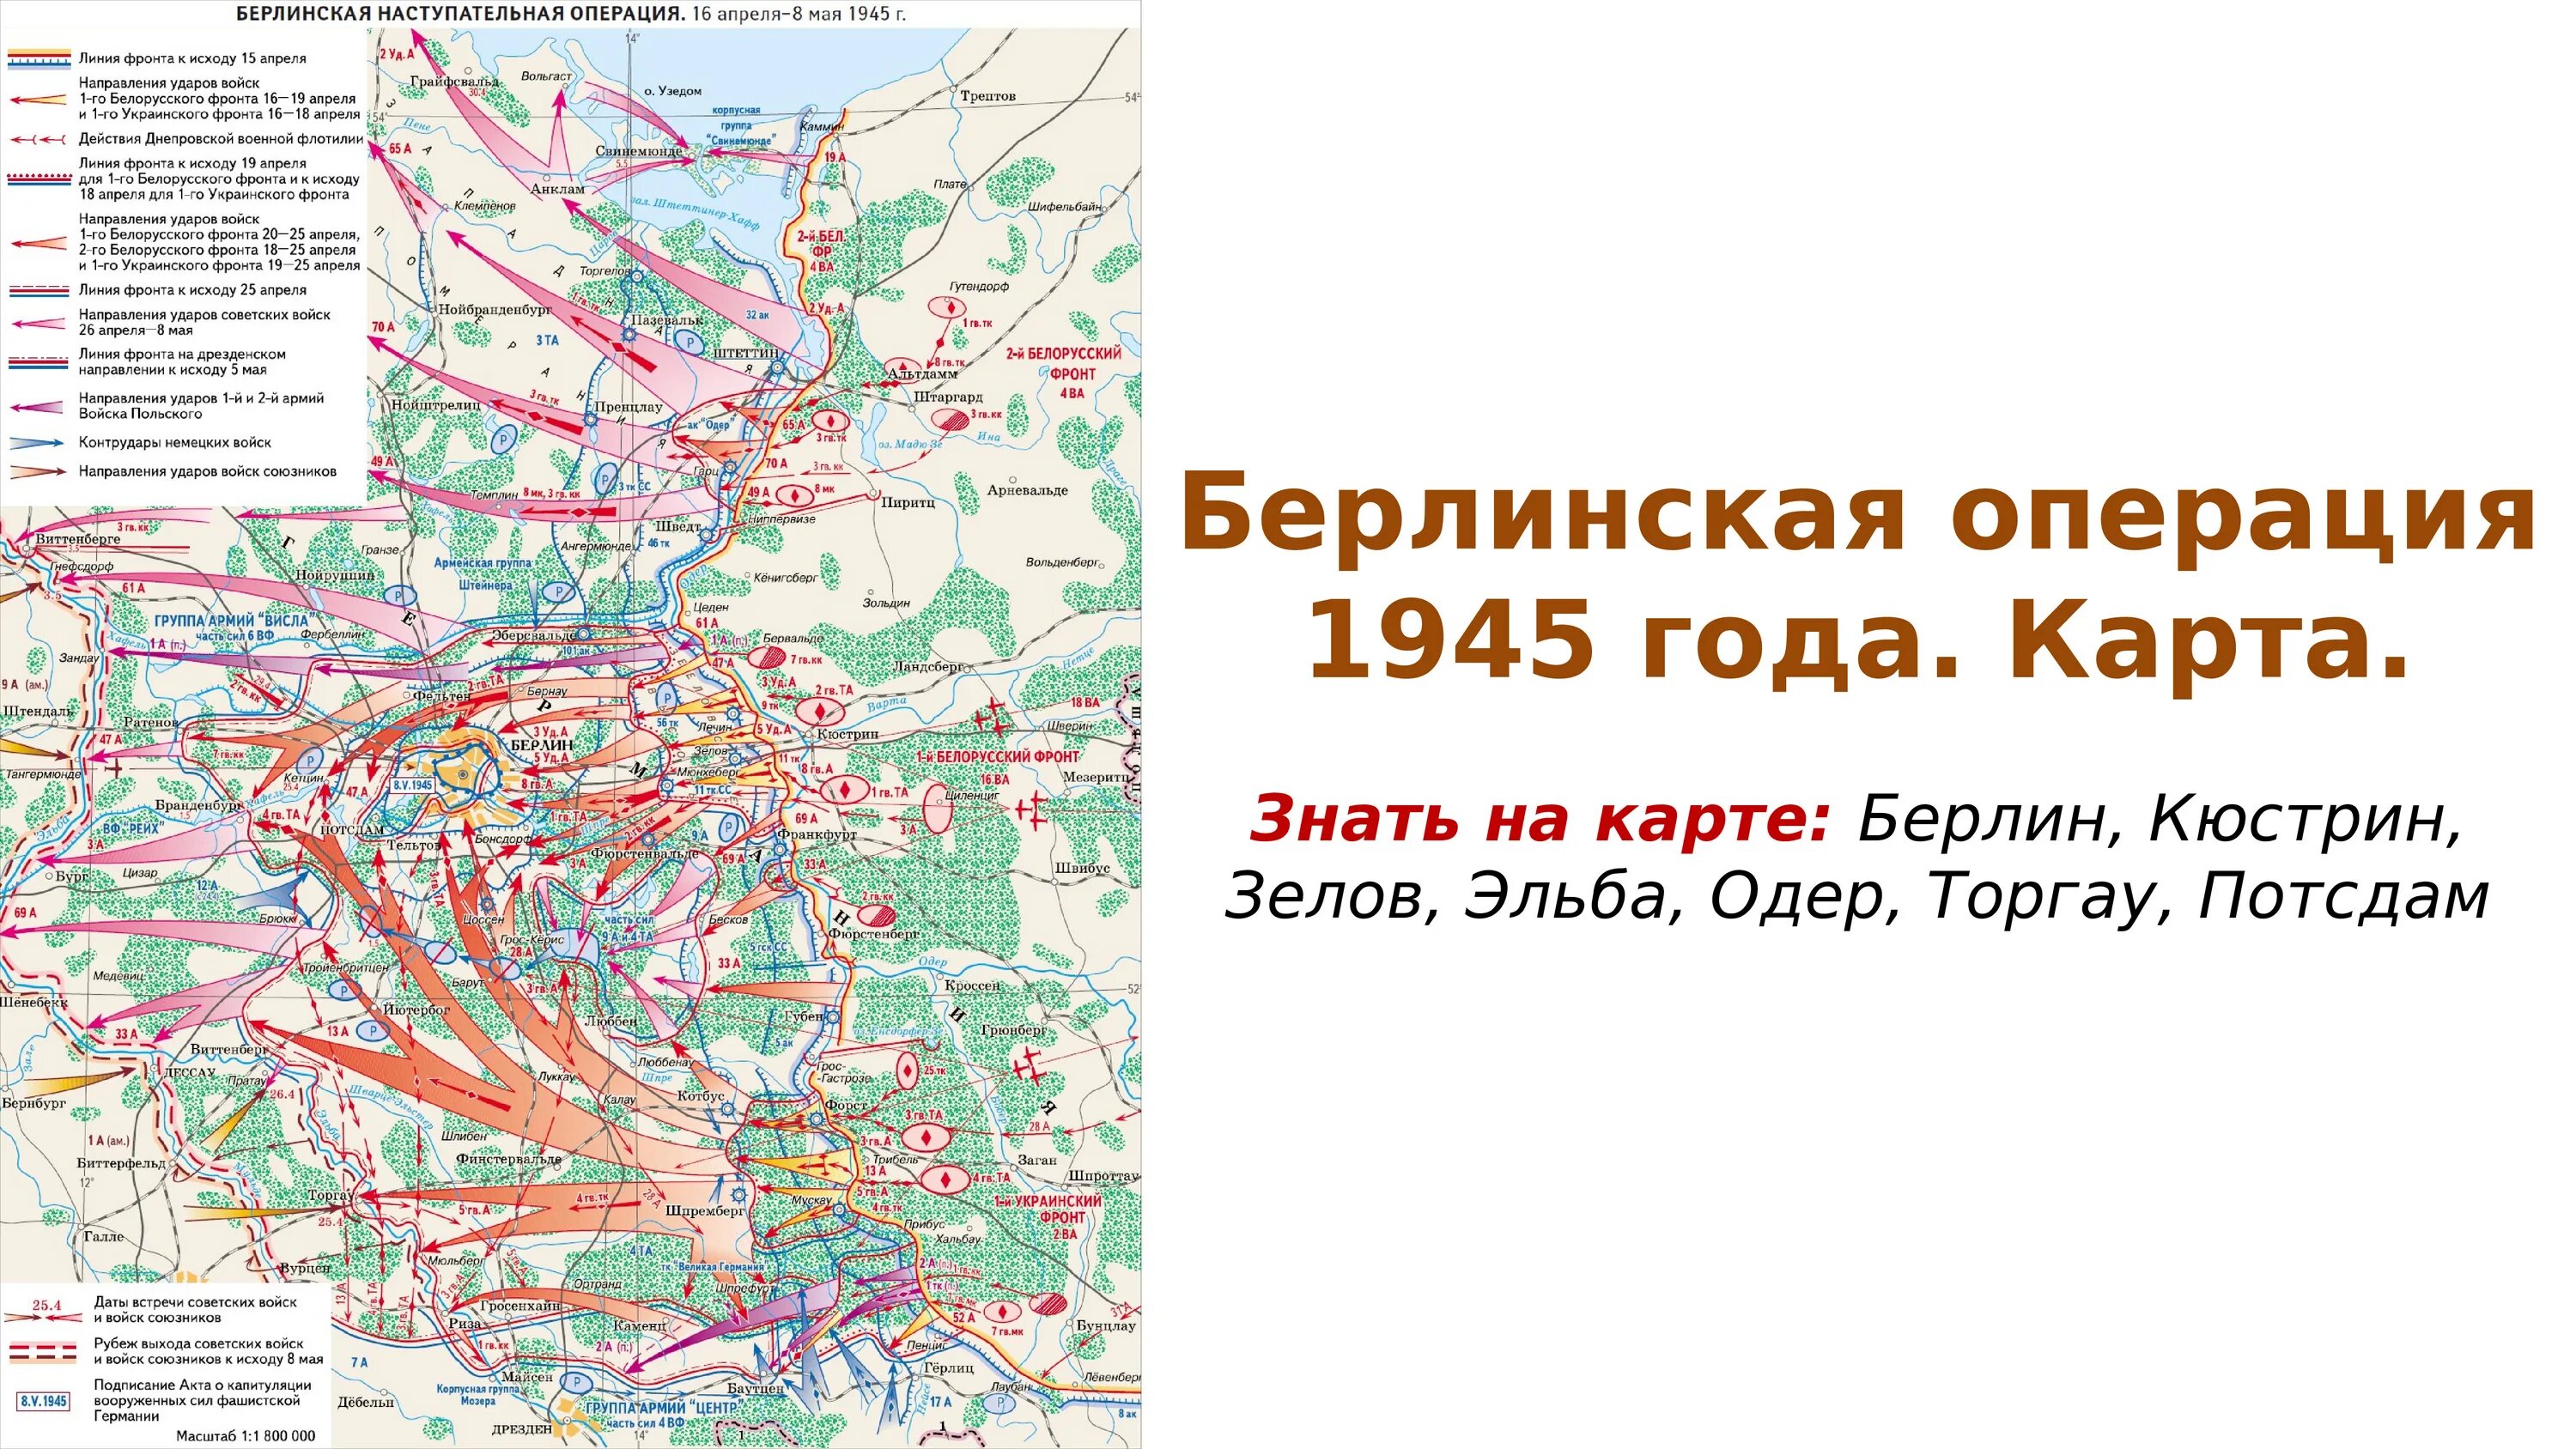 Карта Берлинской операции 1945 года. Берлинская наступательная операция 1945 карта. Карта штурма Берлина 1945 года. Берлин на карте Великой Отечественной войны.